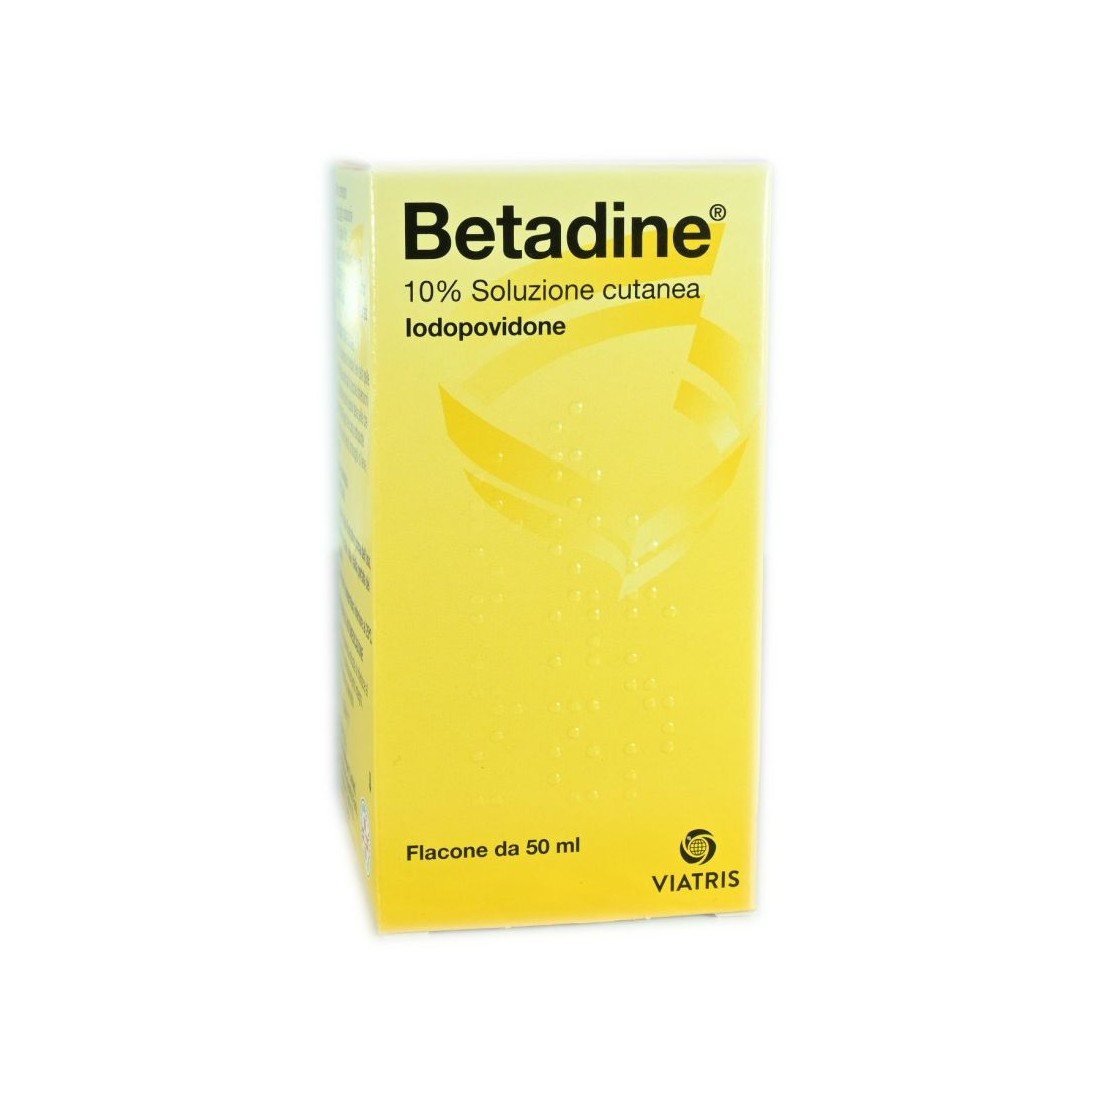 Betadine soluzione cutanea 50 ml 10% antisettico disinfettante